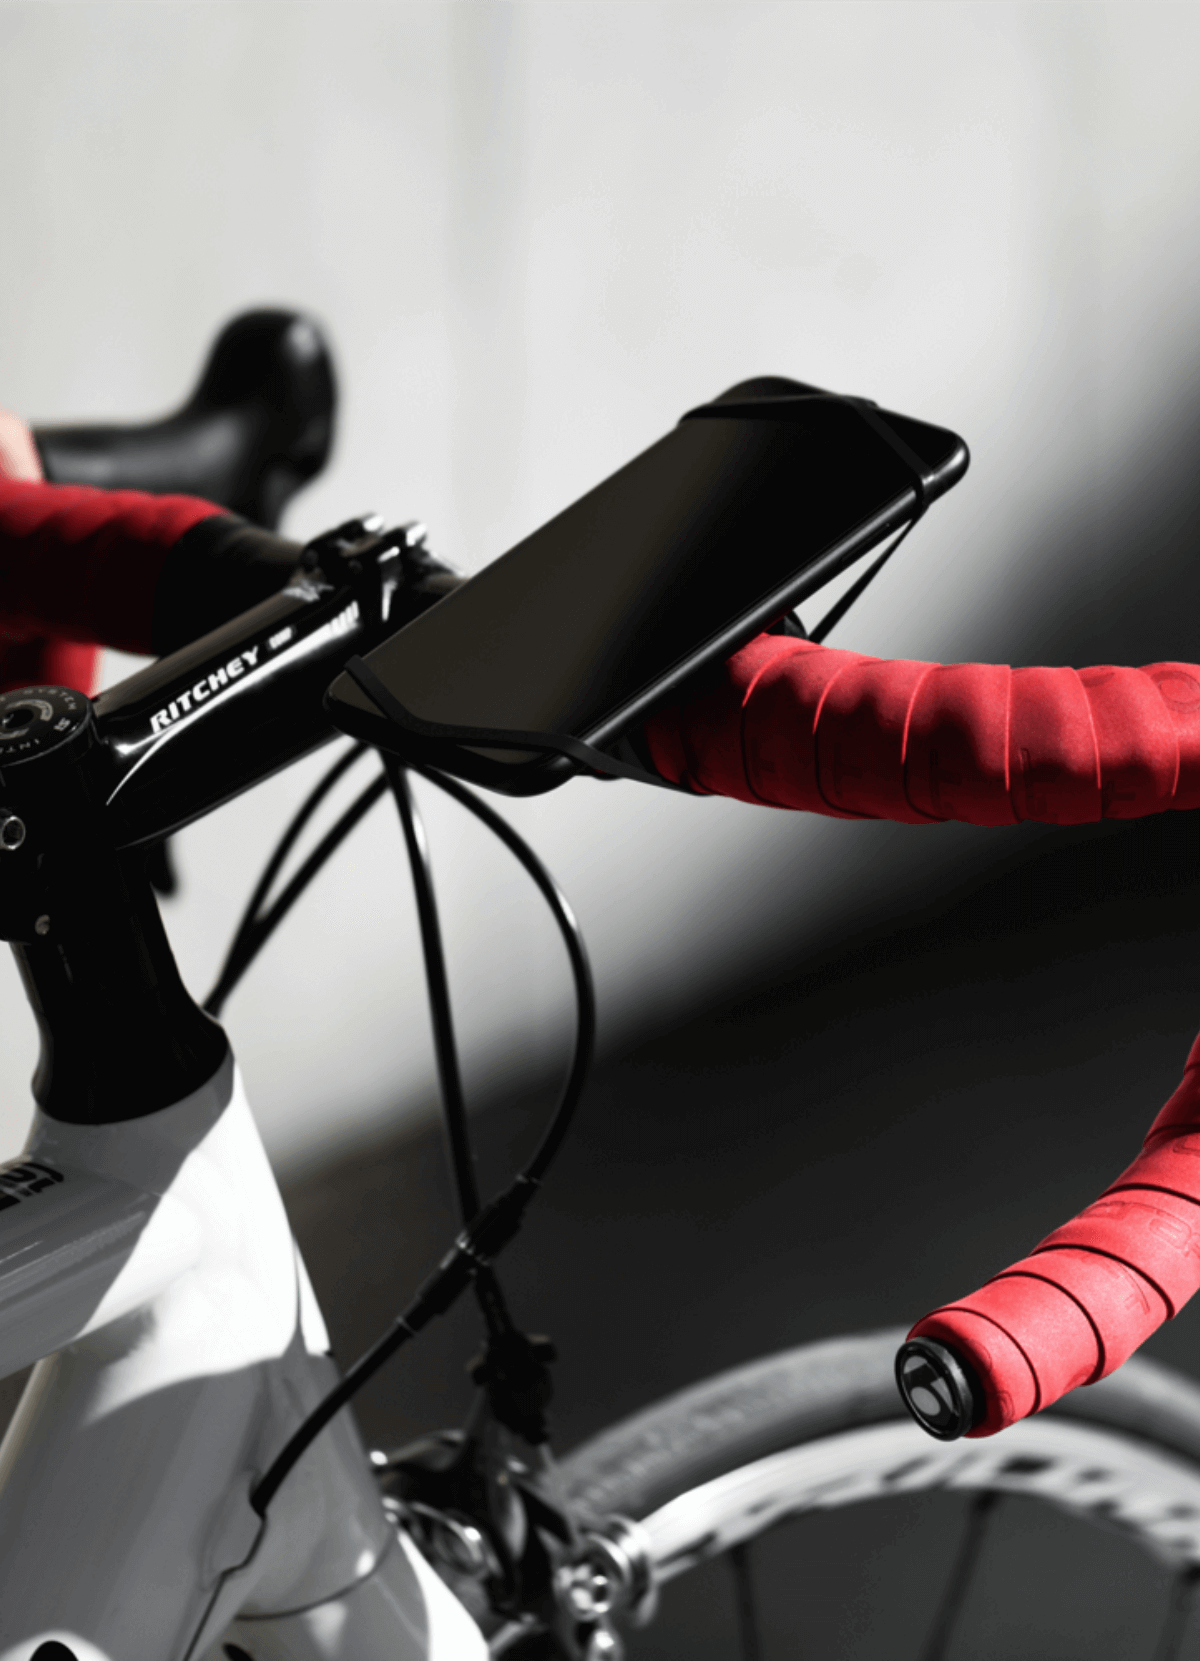 Patch adhésif de support vélo universelle pour smartphone